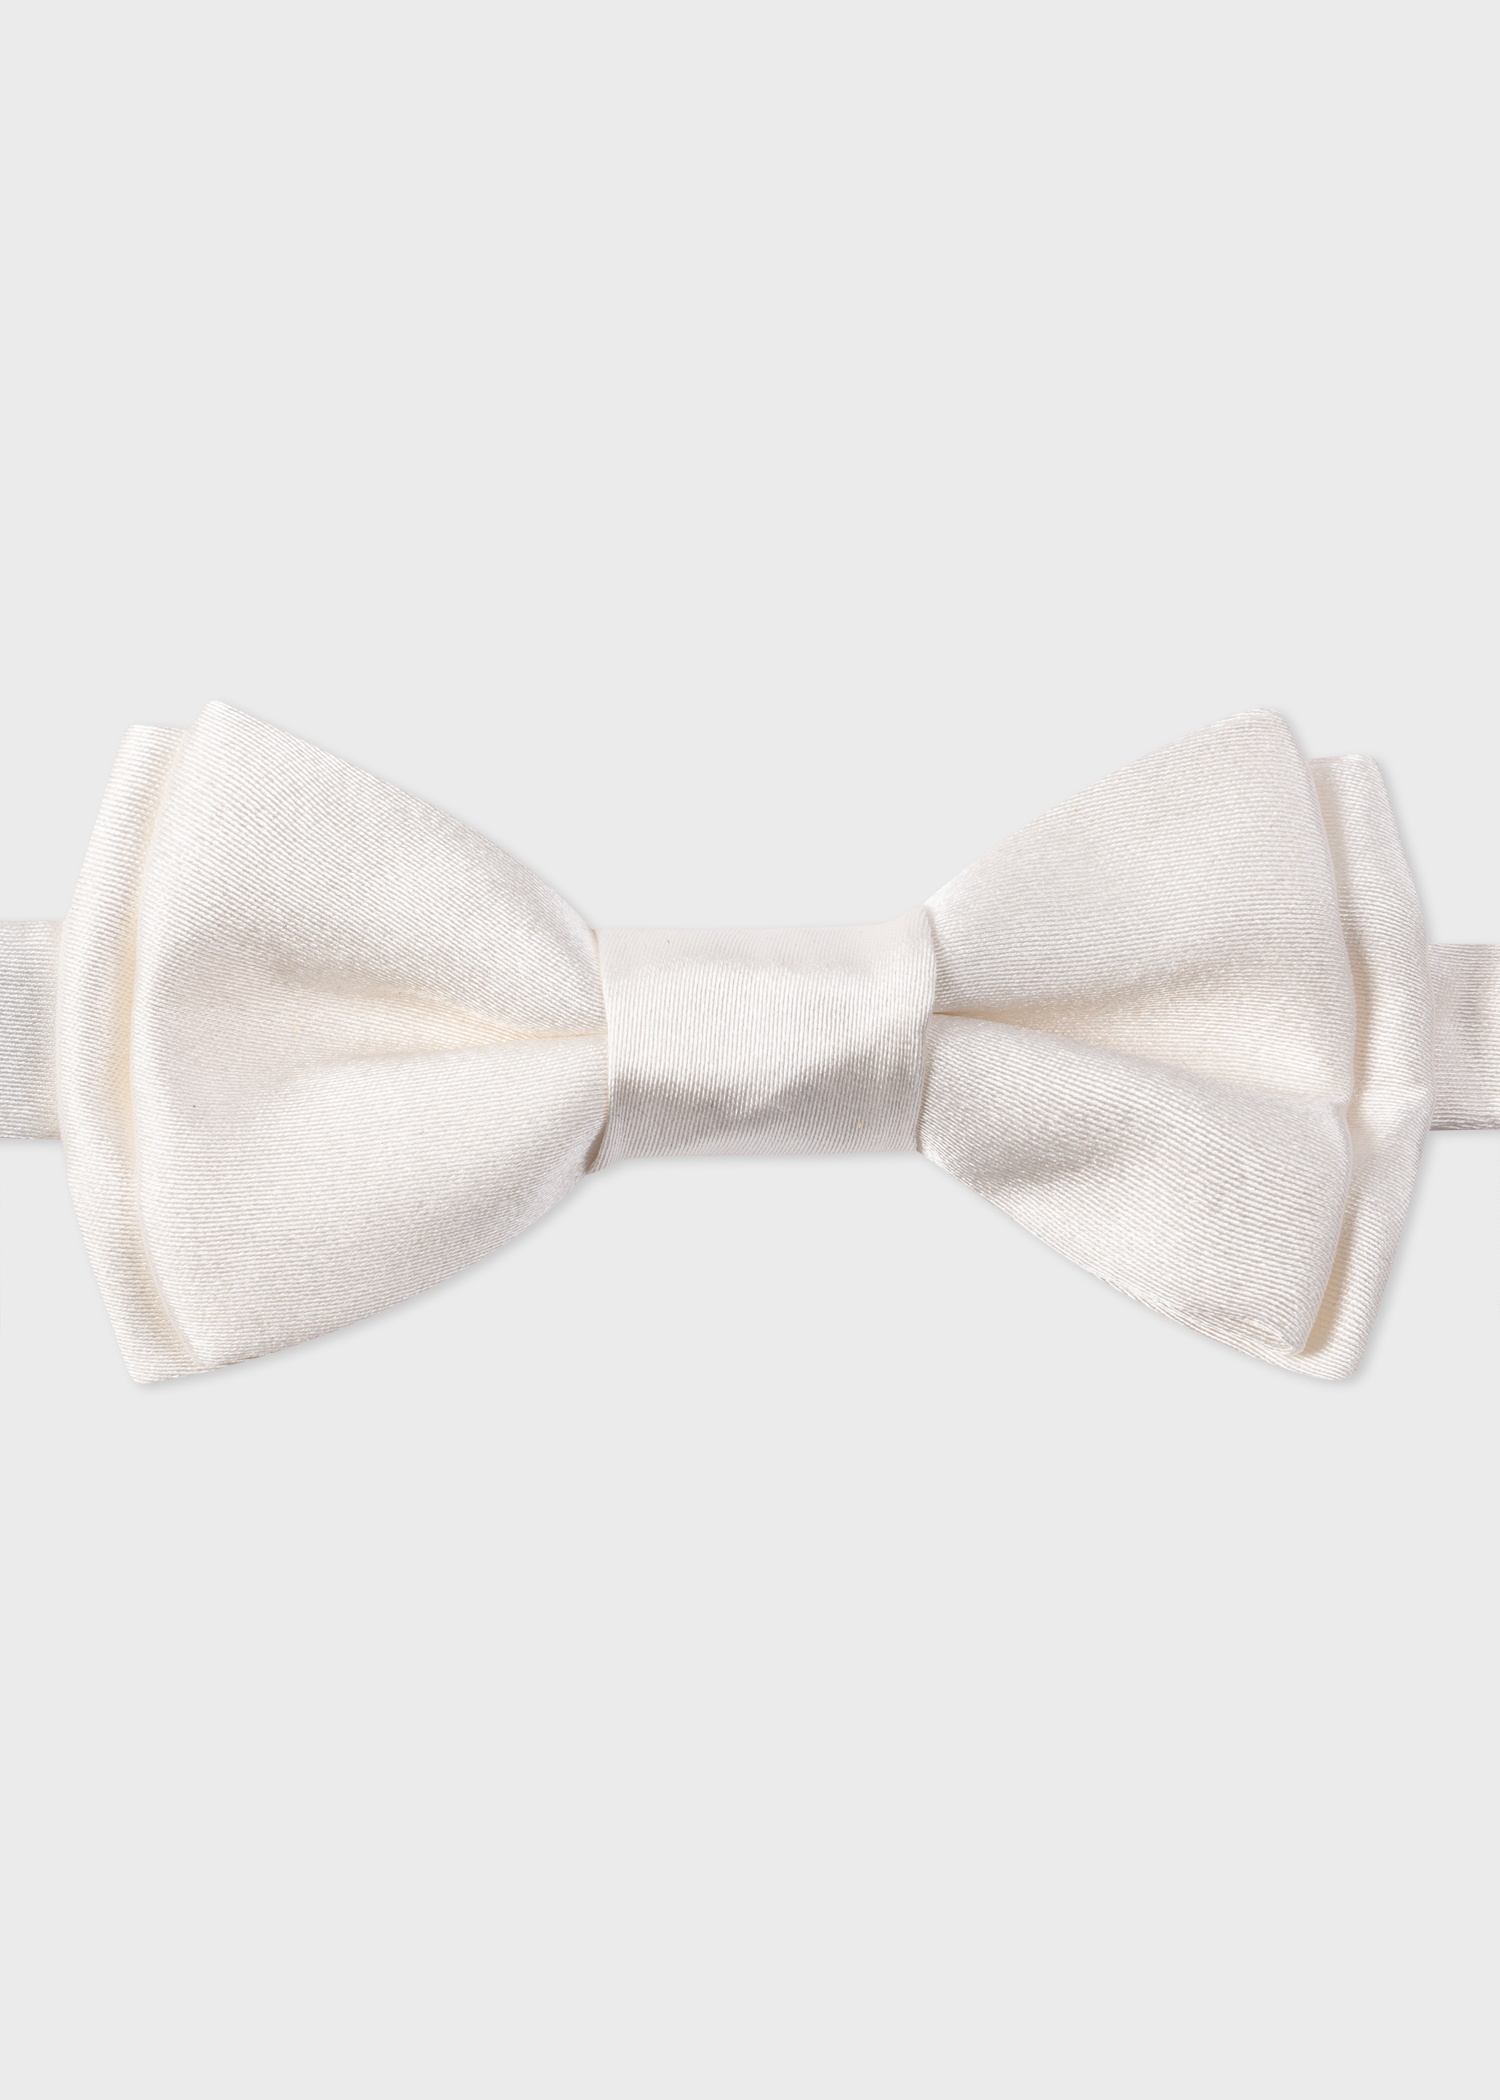 White Pre-Tied Silk Bow Tie - 1